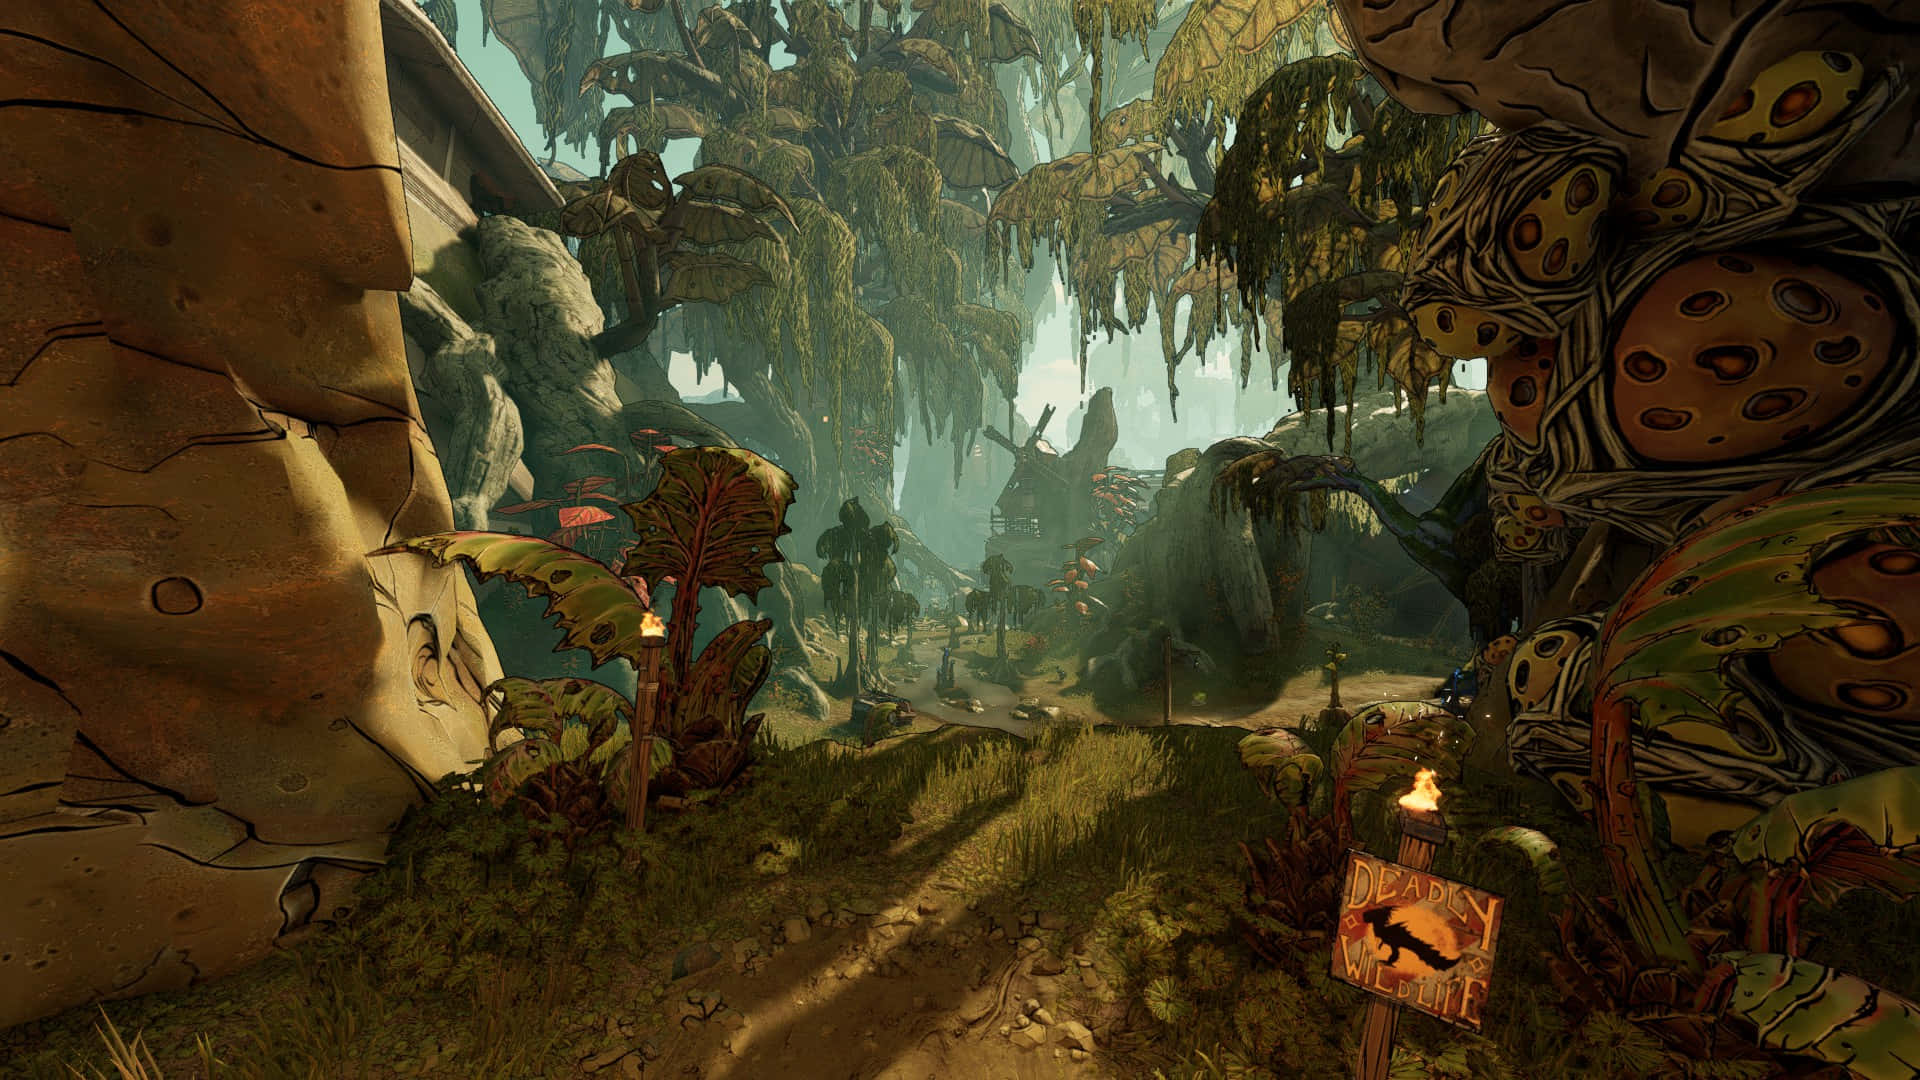 Spil Borderlands 3 og gør dig klar til en actionfyldt eventyr gennem de vilde lande af Pandora!